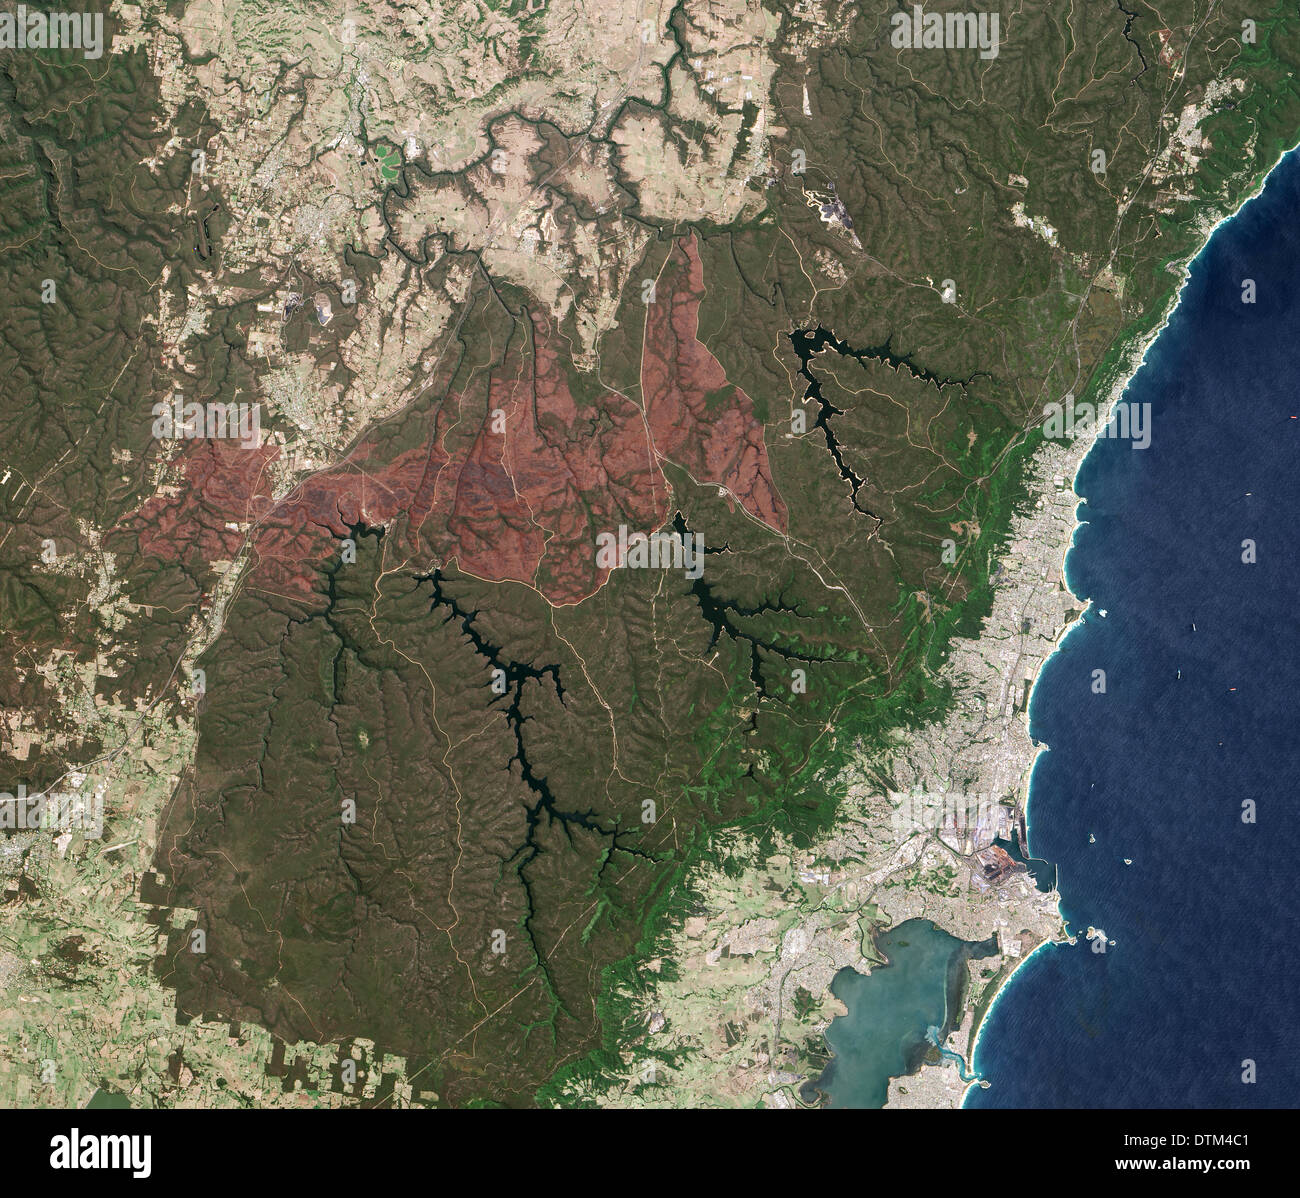 Feu de forêt près de Sydney Australie Brûlées Banque D'Images